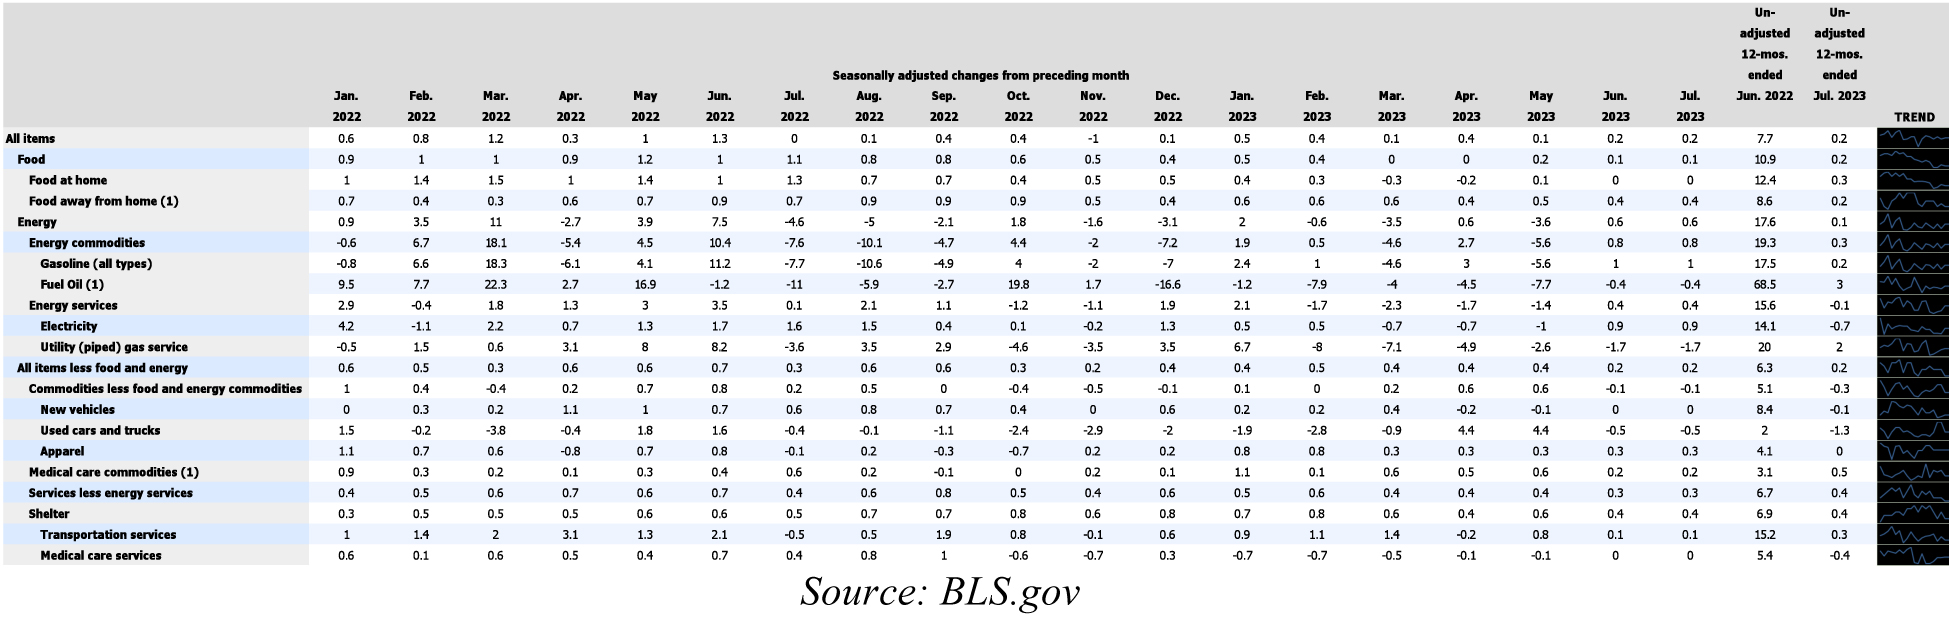 Bureau of Labor Statistics Table